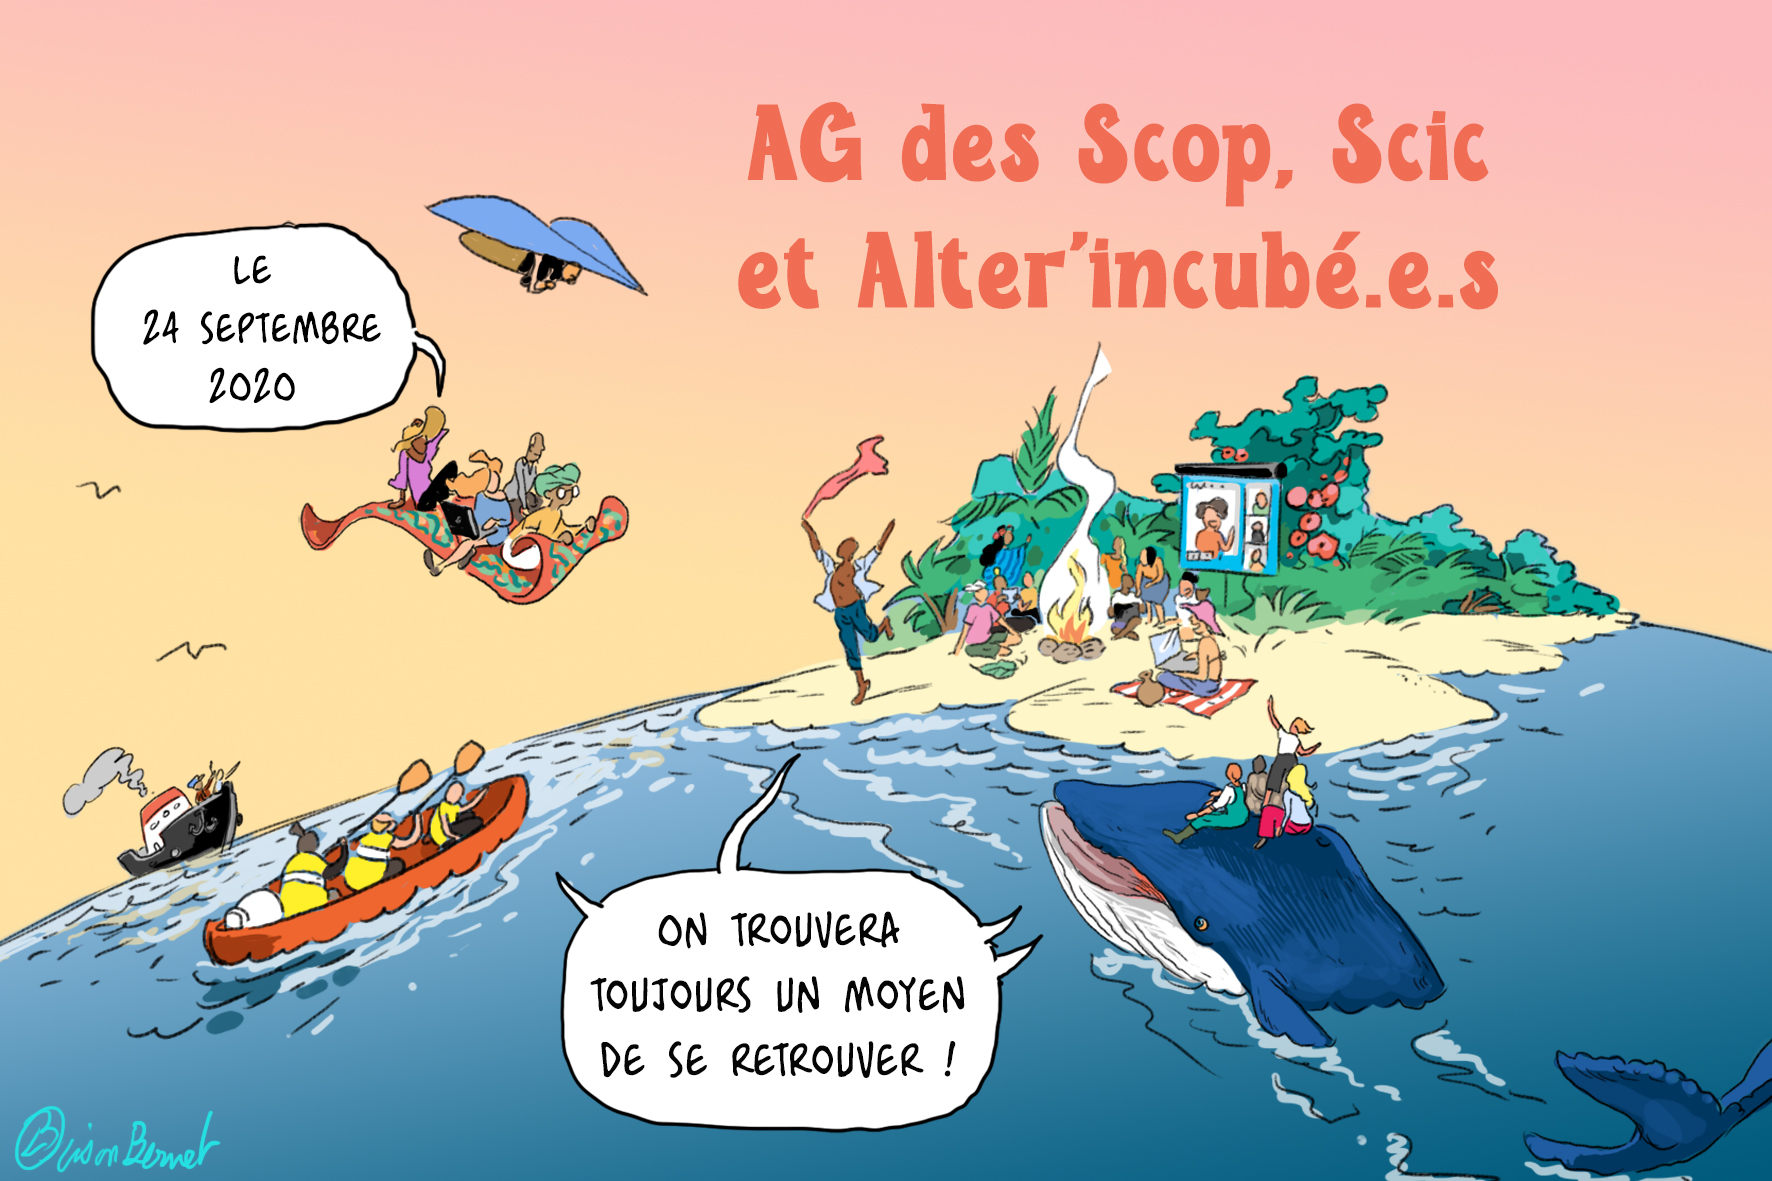 Assemblée générale des Scop et Scic Auvergne-Rhône-Alpes dessin lison bernet